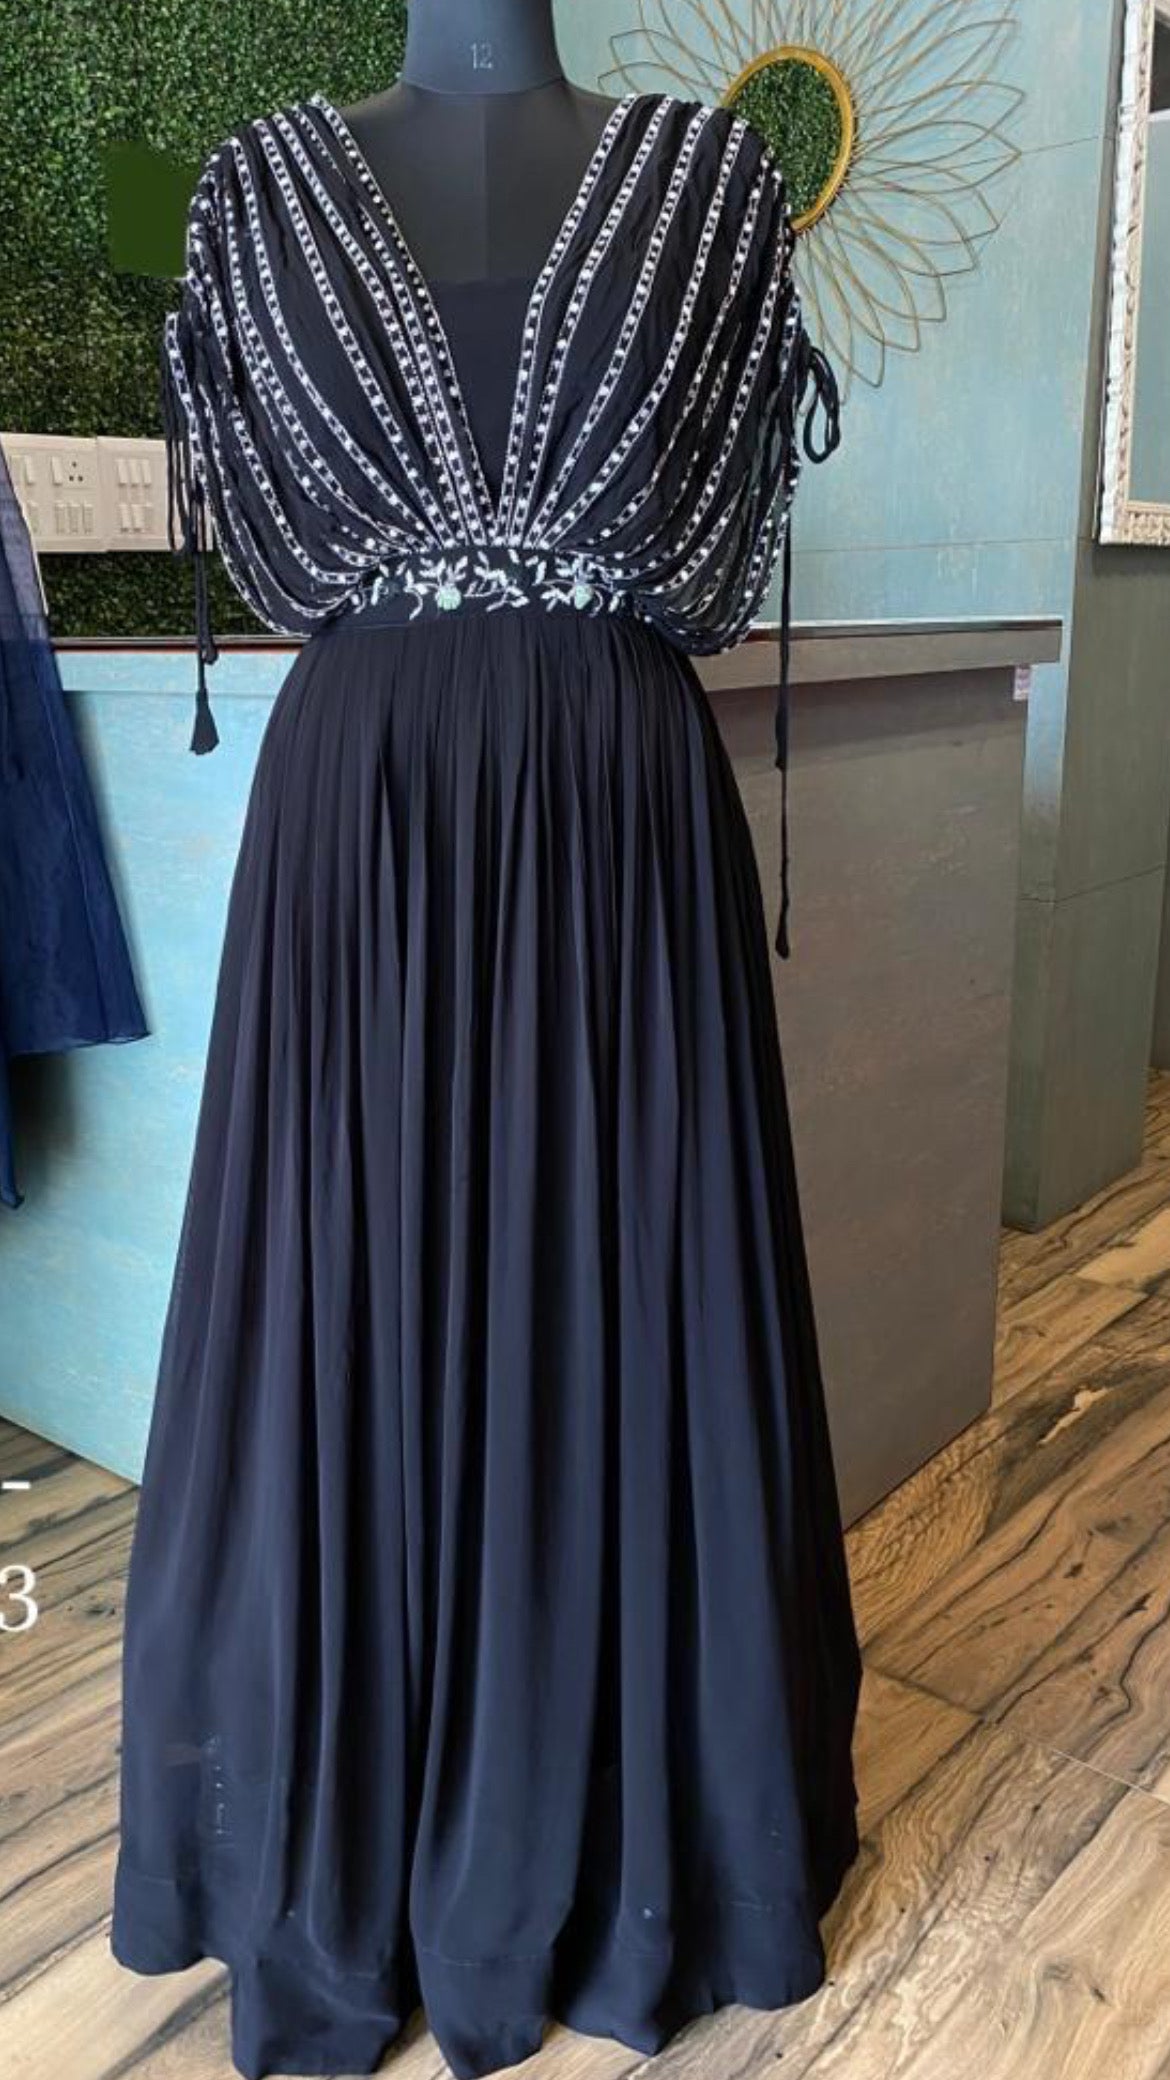 Florence Pugh's Black Rodarte Sheer Dress | POPSUGAR Fashion